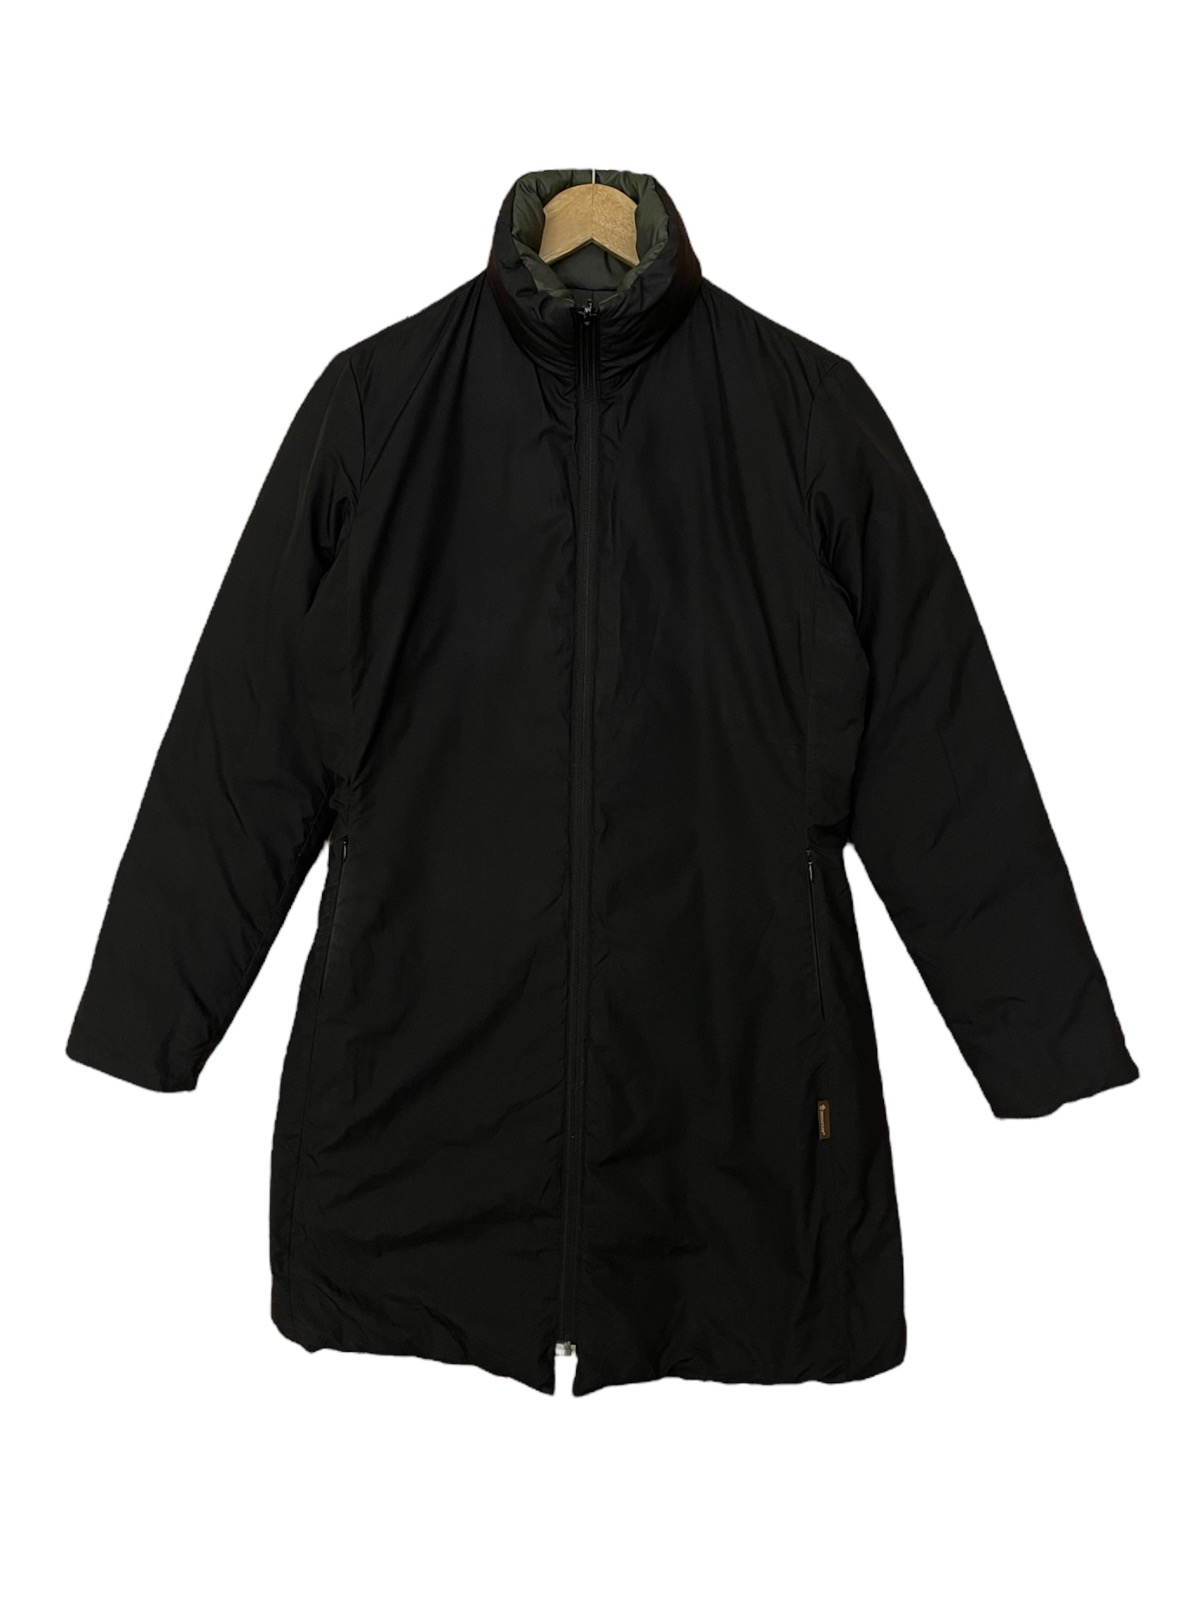 Moncler long puffer jacket reversible down jacket - 6